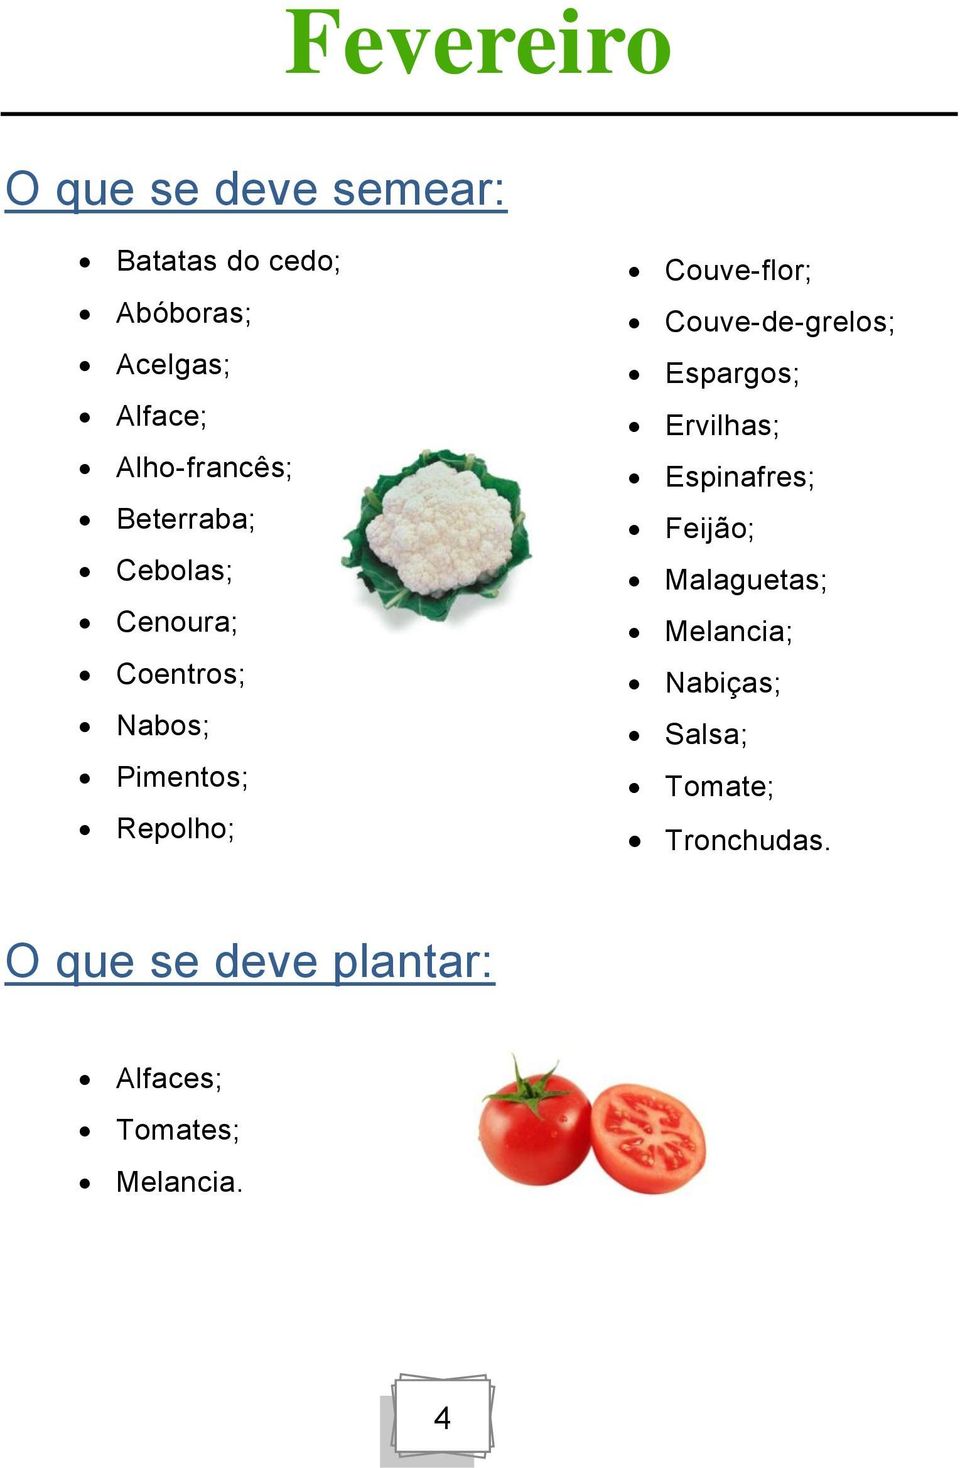 Couve-flor; Couve-de-grelos; Espargos; Ervilhas; Espinafres; Feijão; Malaguetas;